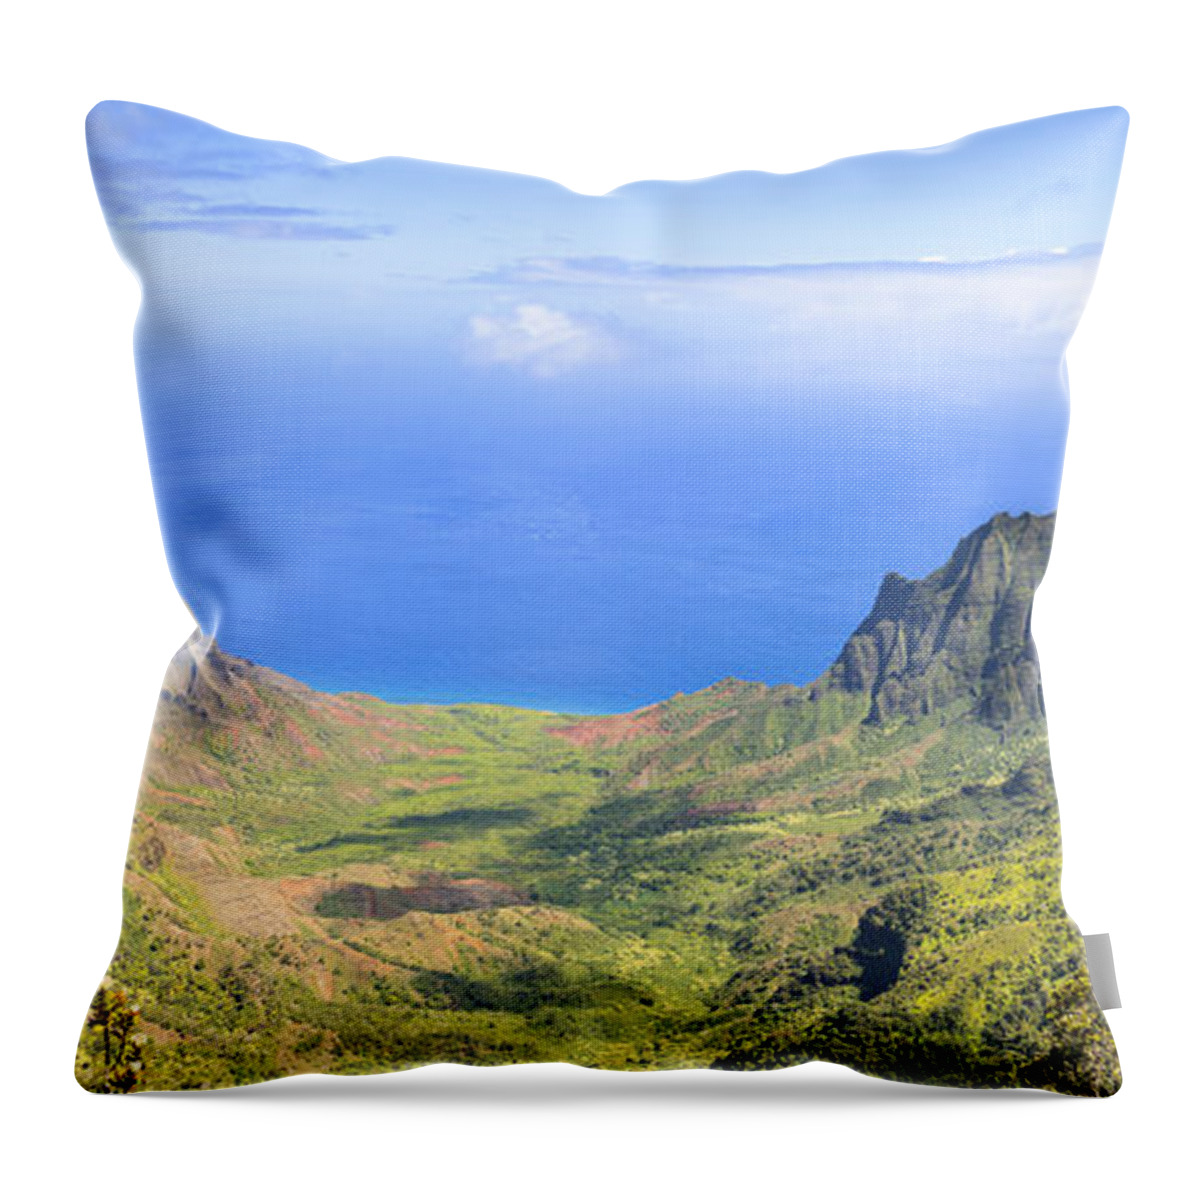 Kalalau Valley Throw Pillow featuring the photograph Kalalau Valley panorama Kauai Hawaii by Ken Brown